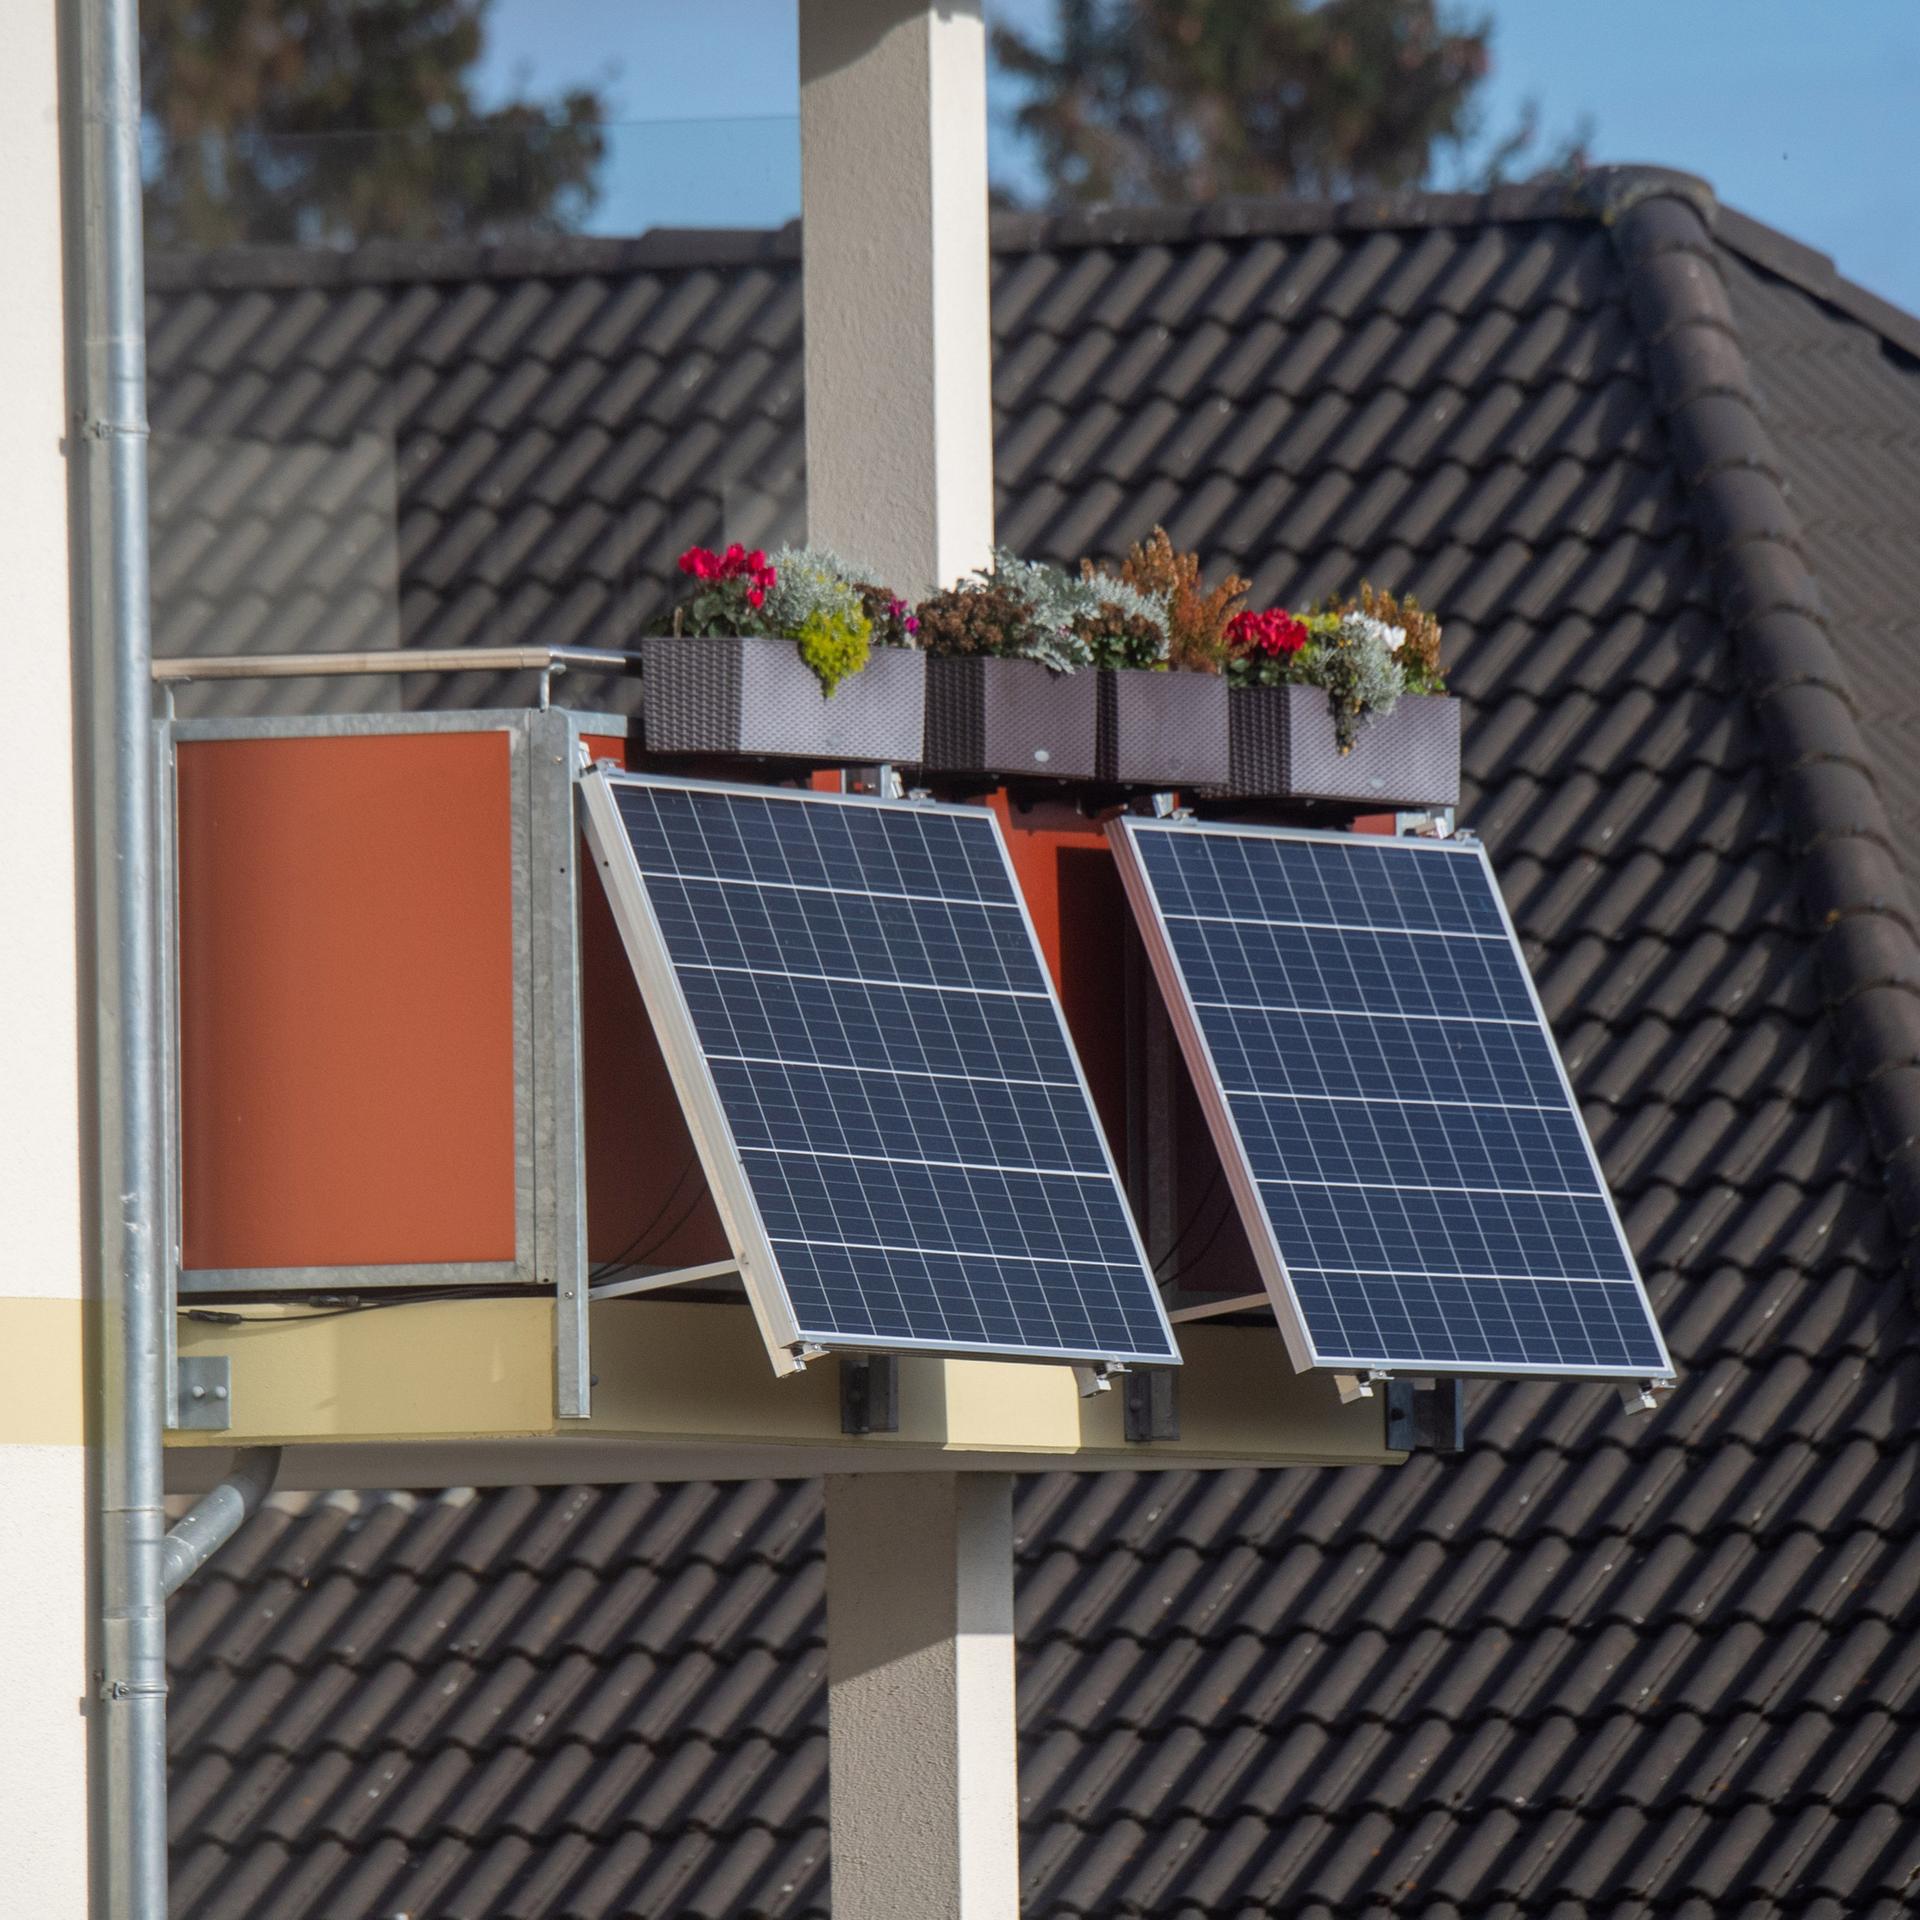 Solarmodule für ein sogenanntes Balkonkraftwerk hängen an einem Balkon unter bunt bepflanzten Blumenkästen.